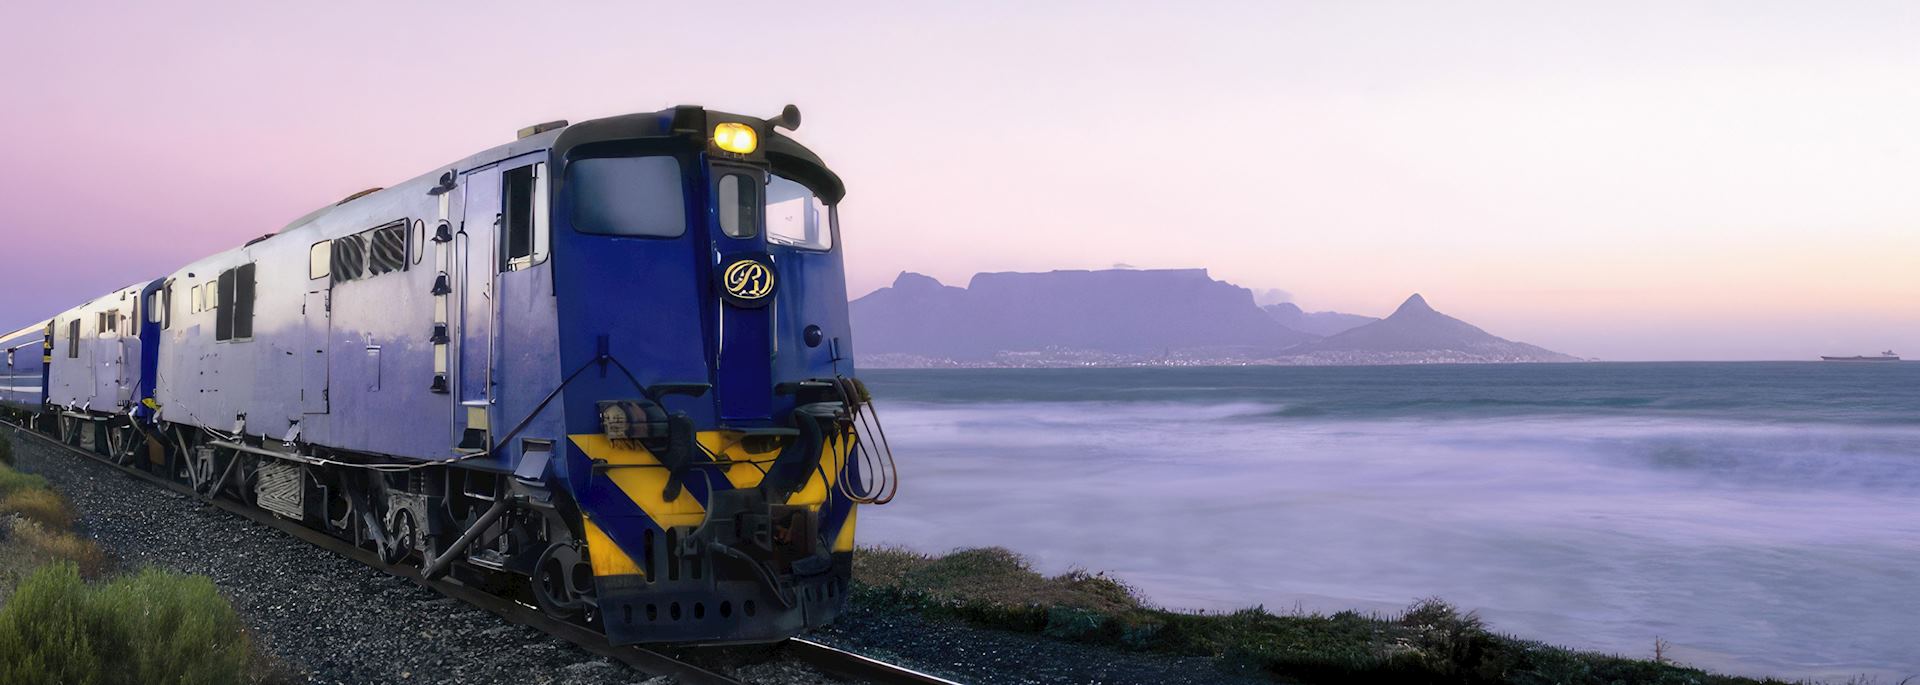 Blue Train near Table Mountain